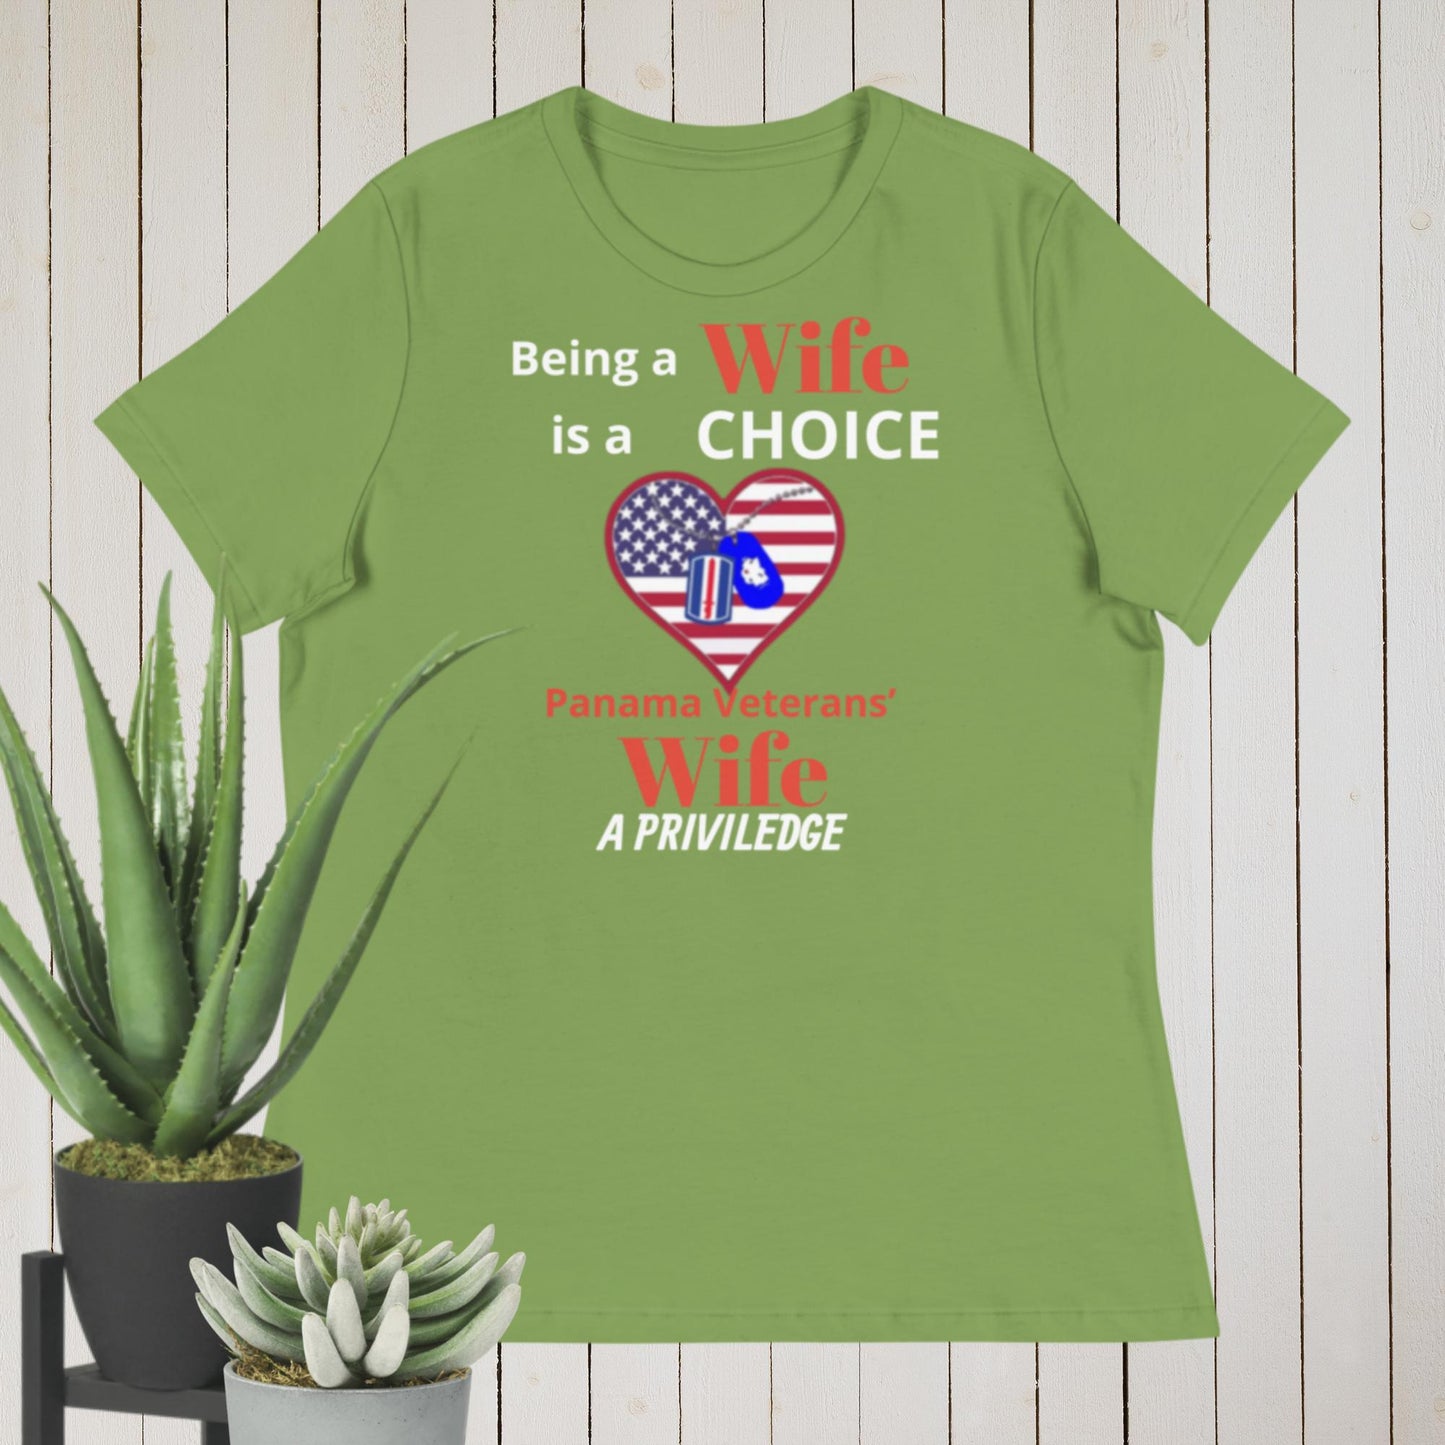 Panama Canal Zone Veteran - Women's Relaxed T-Shirt